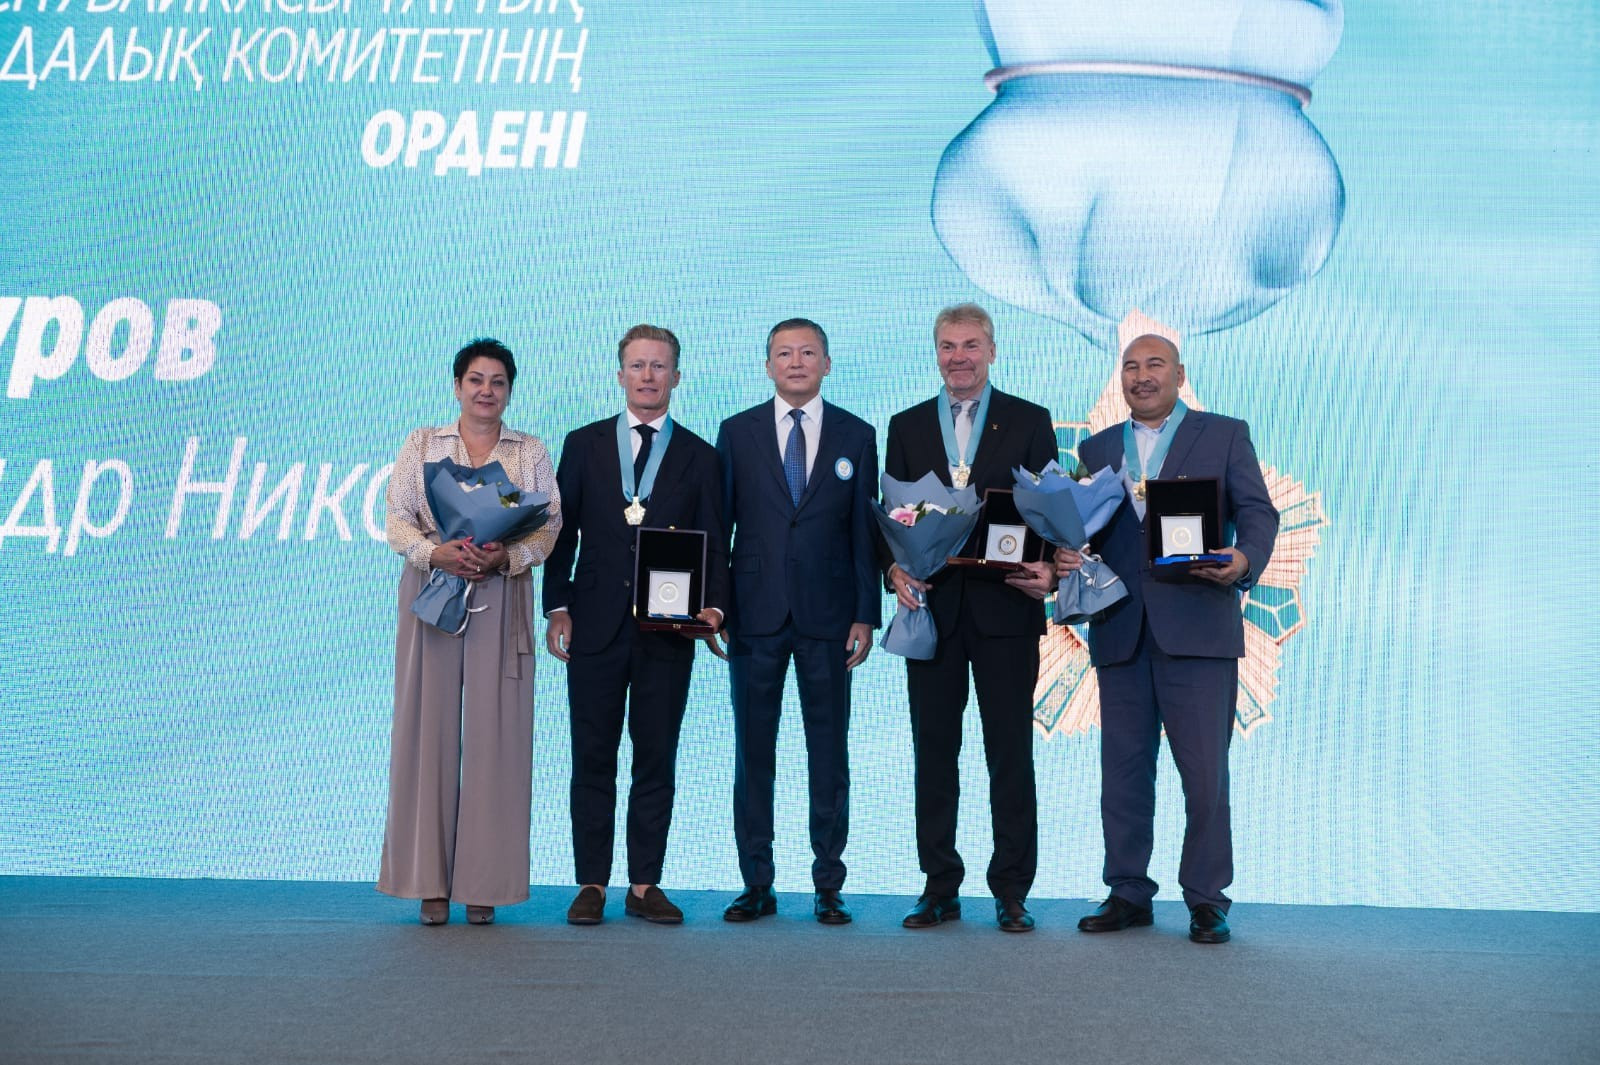 Подробнее о статье Юбилей Олимпийского движения в Казахстане: НОК РК чествовал деятелей спорта в Алматы